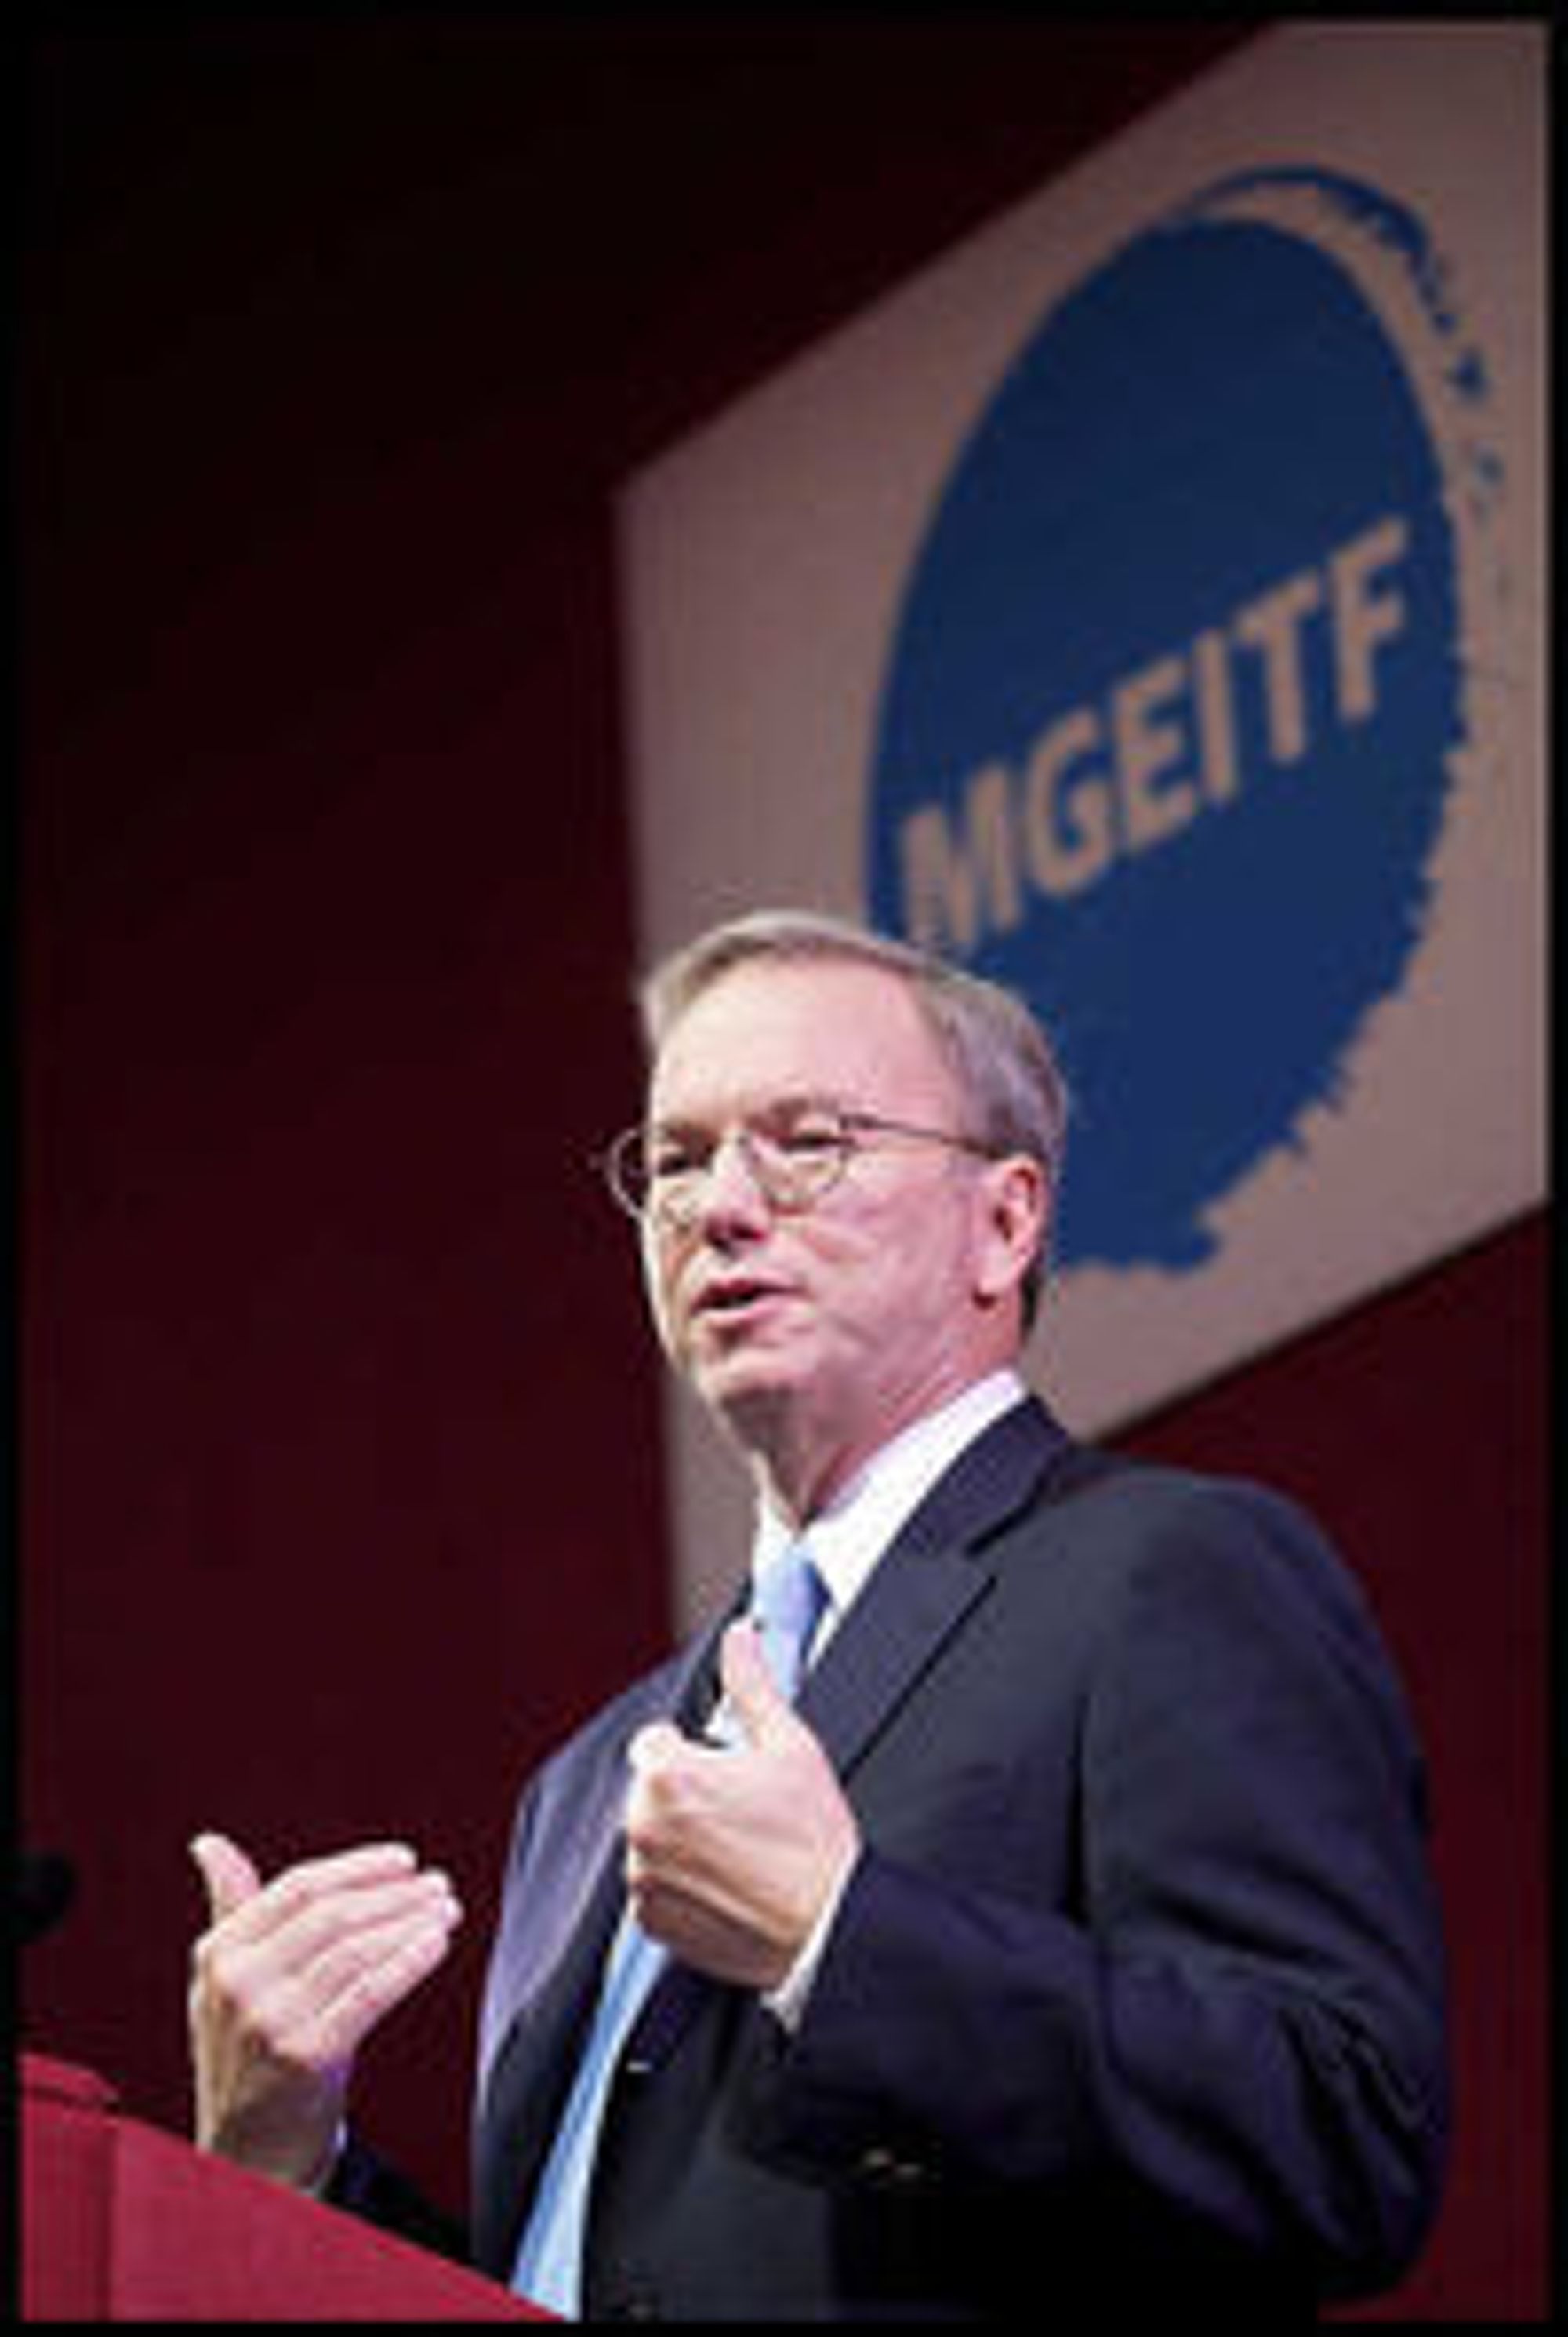 Styreformann i Google, Eric Schmidt, talte til deltakerne under MGEITF 2011.